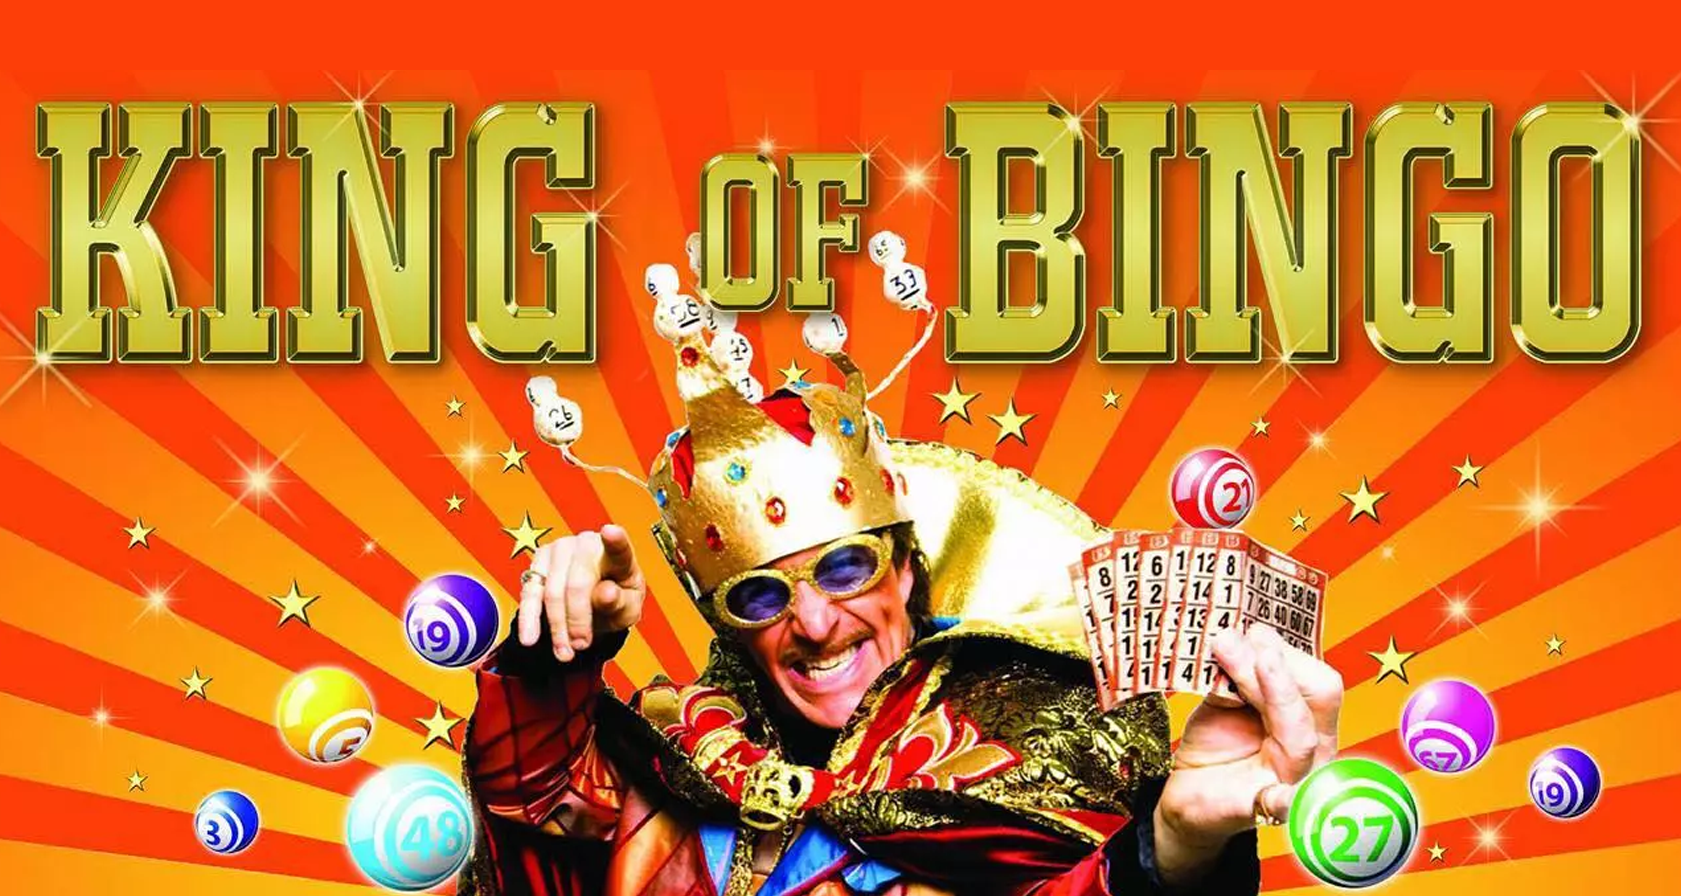 Dinerspel teamuitje: King of Bingo